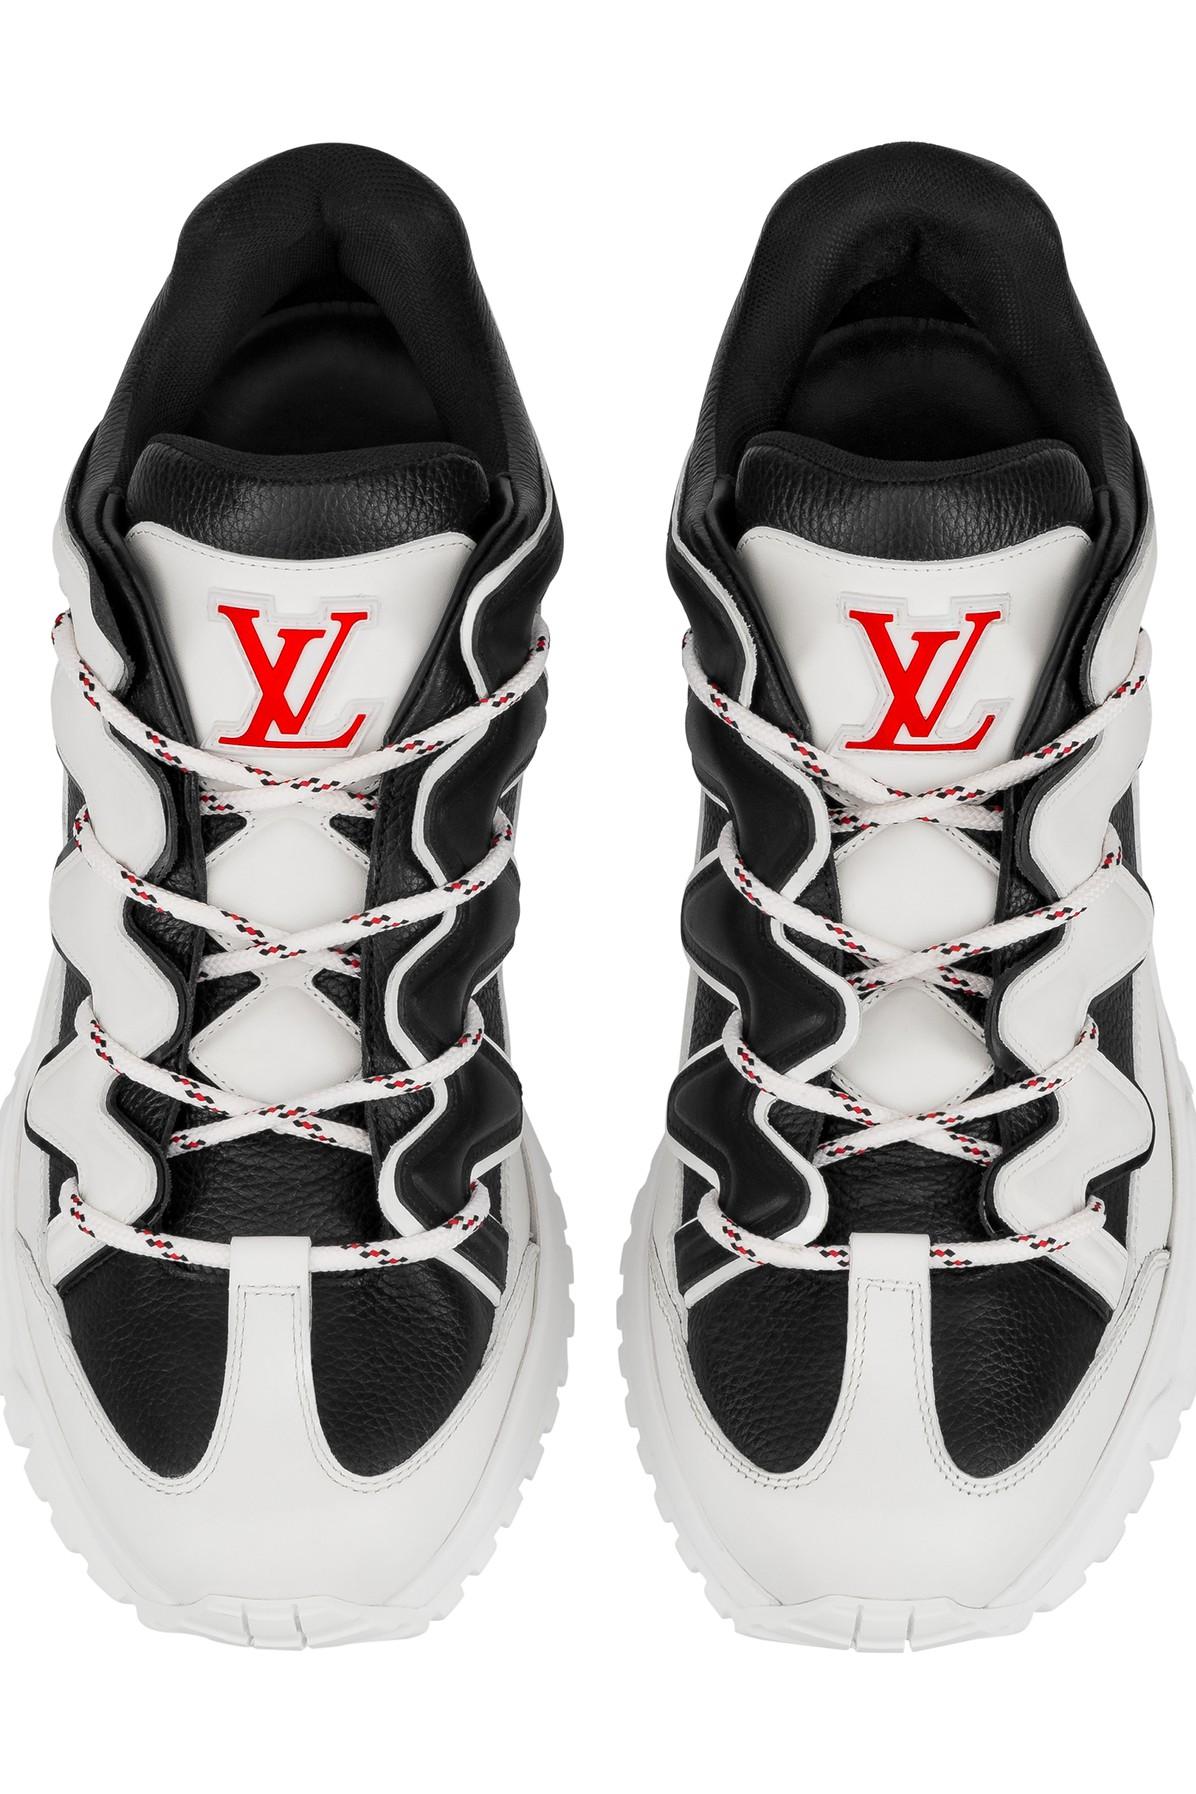 Louis Vuitton Zigzag Multicolor Leather Sneakers Size 11 Men's GO0179  LV Size 10